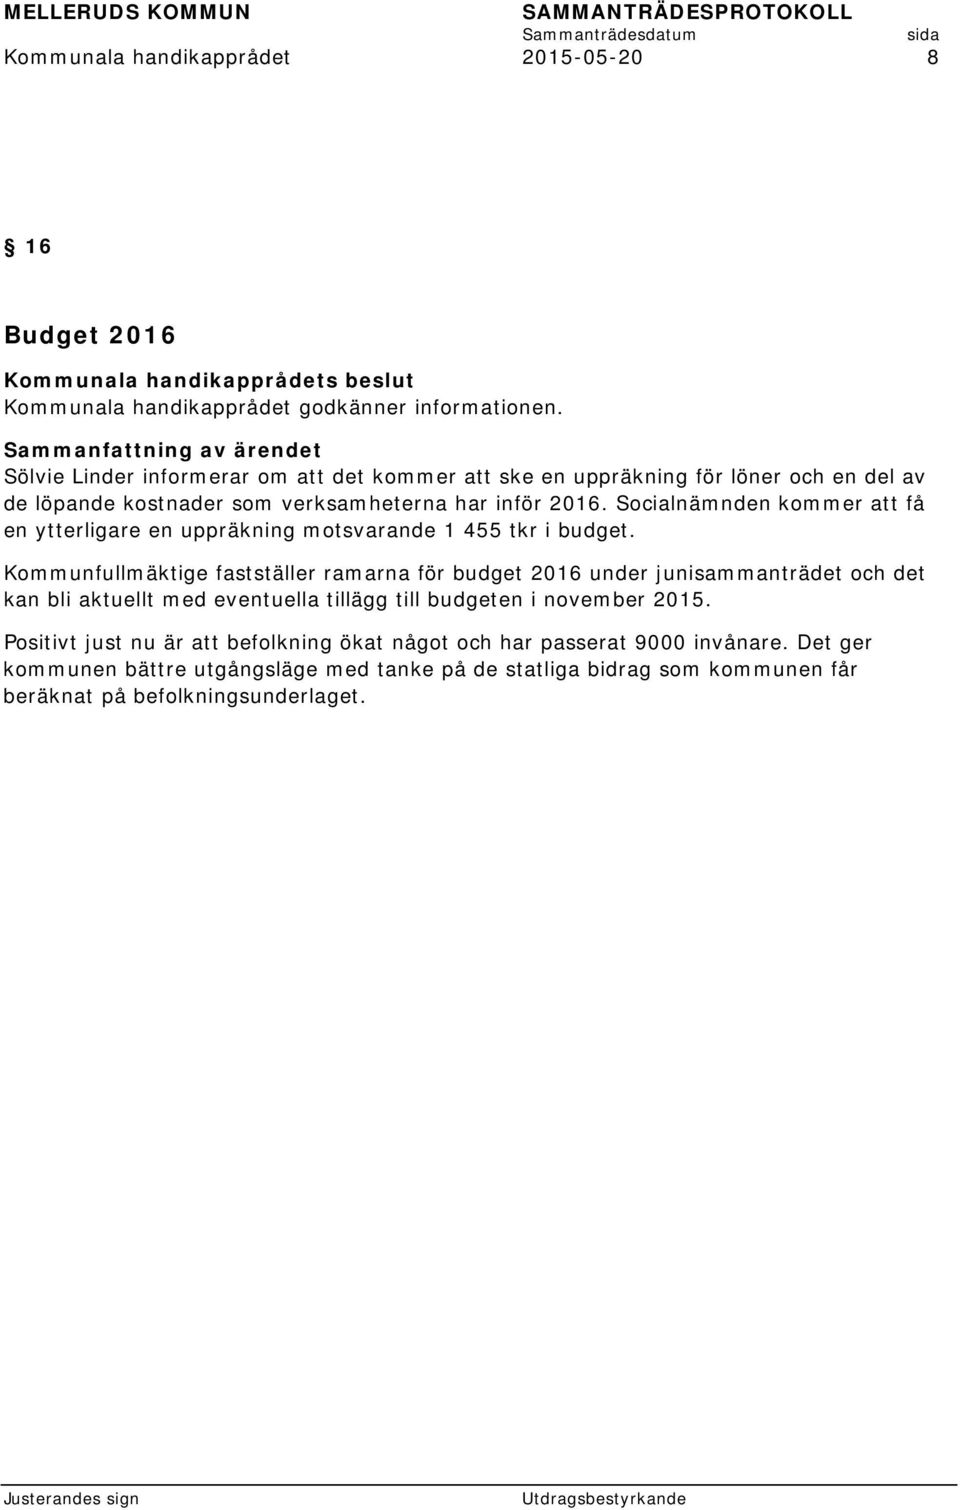 Kommunfullmäktige fastställer ramarna för budget 2016 under junisammanträdet och det kan bli aktuellt med eventuella tillägg till budgeten i november 2015.